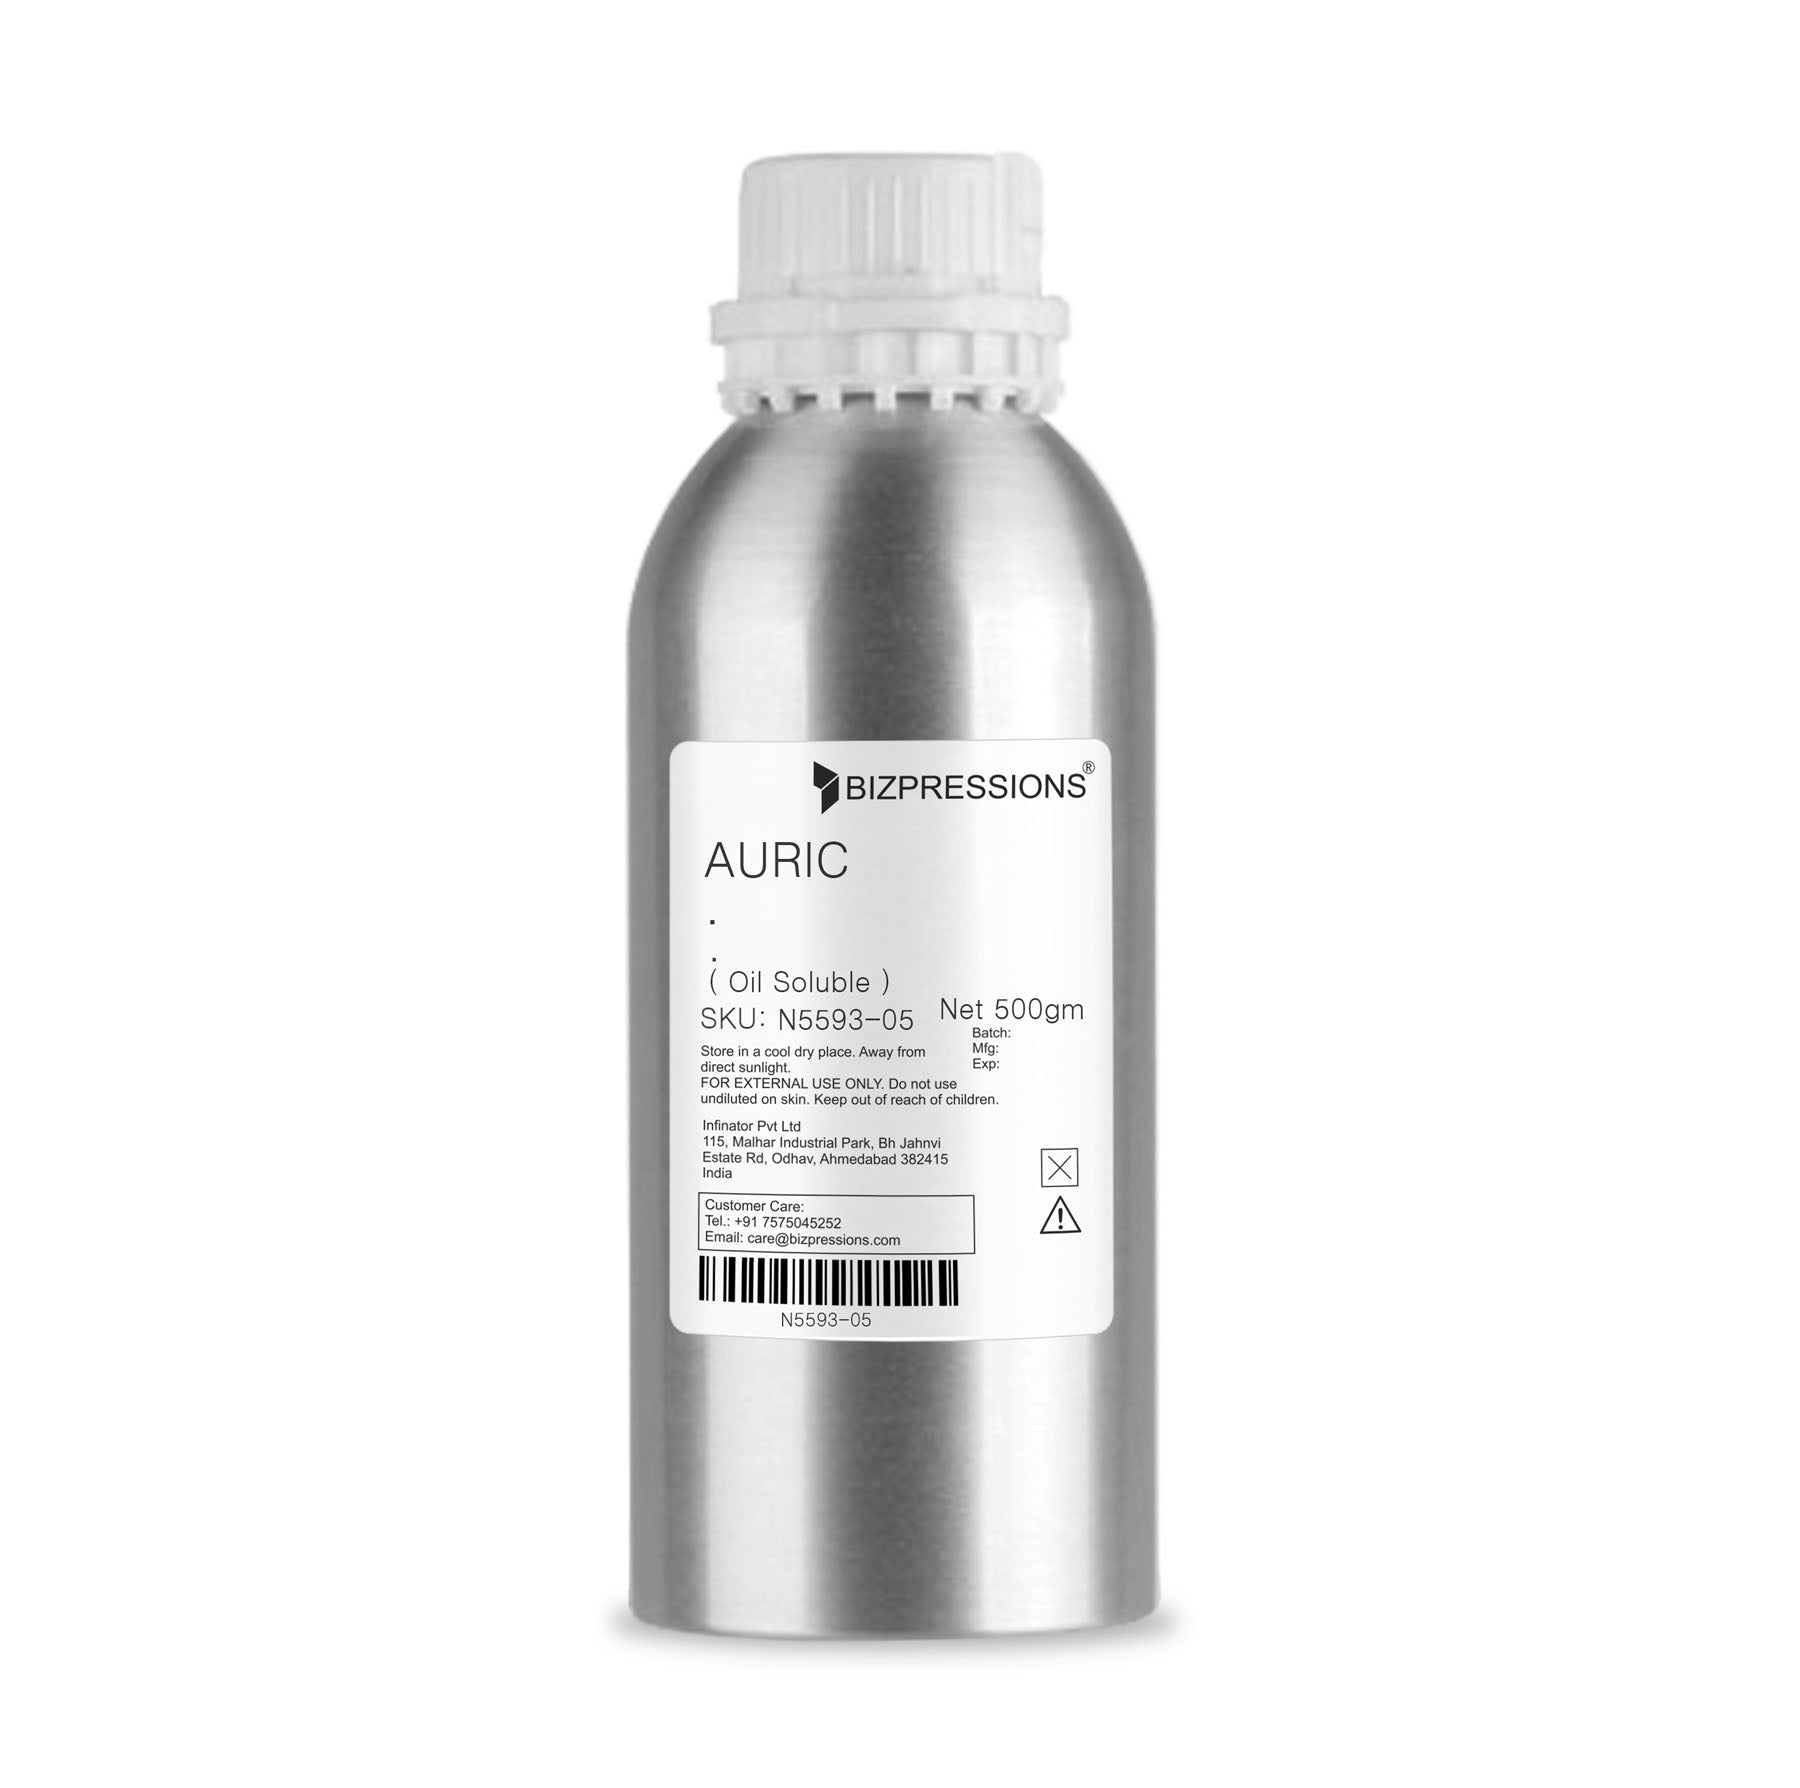 AURIC - Fragrance ( Oil Soluble ) - 500 gm